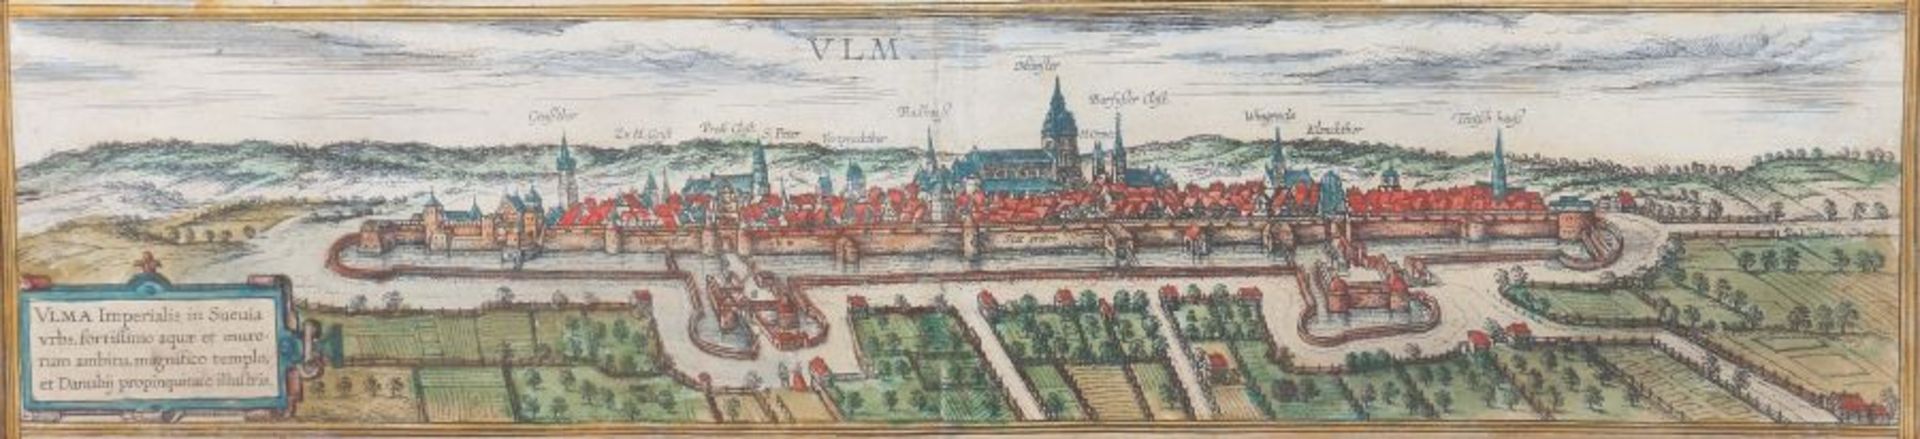 Braun, Georg und Hogenberg, Frans (nach)Grafiker des 16. Jh.. "Ulma imperialis in Suevia urbs,